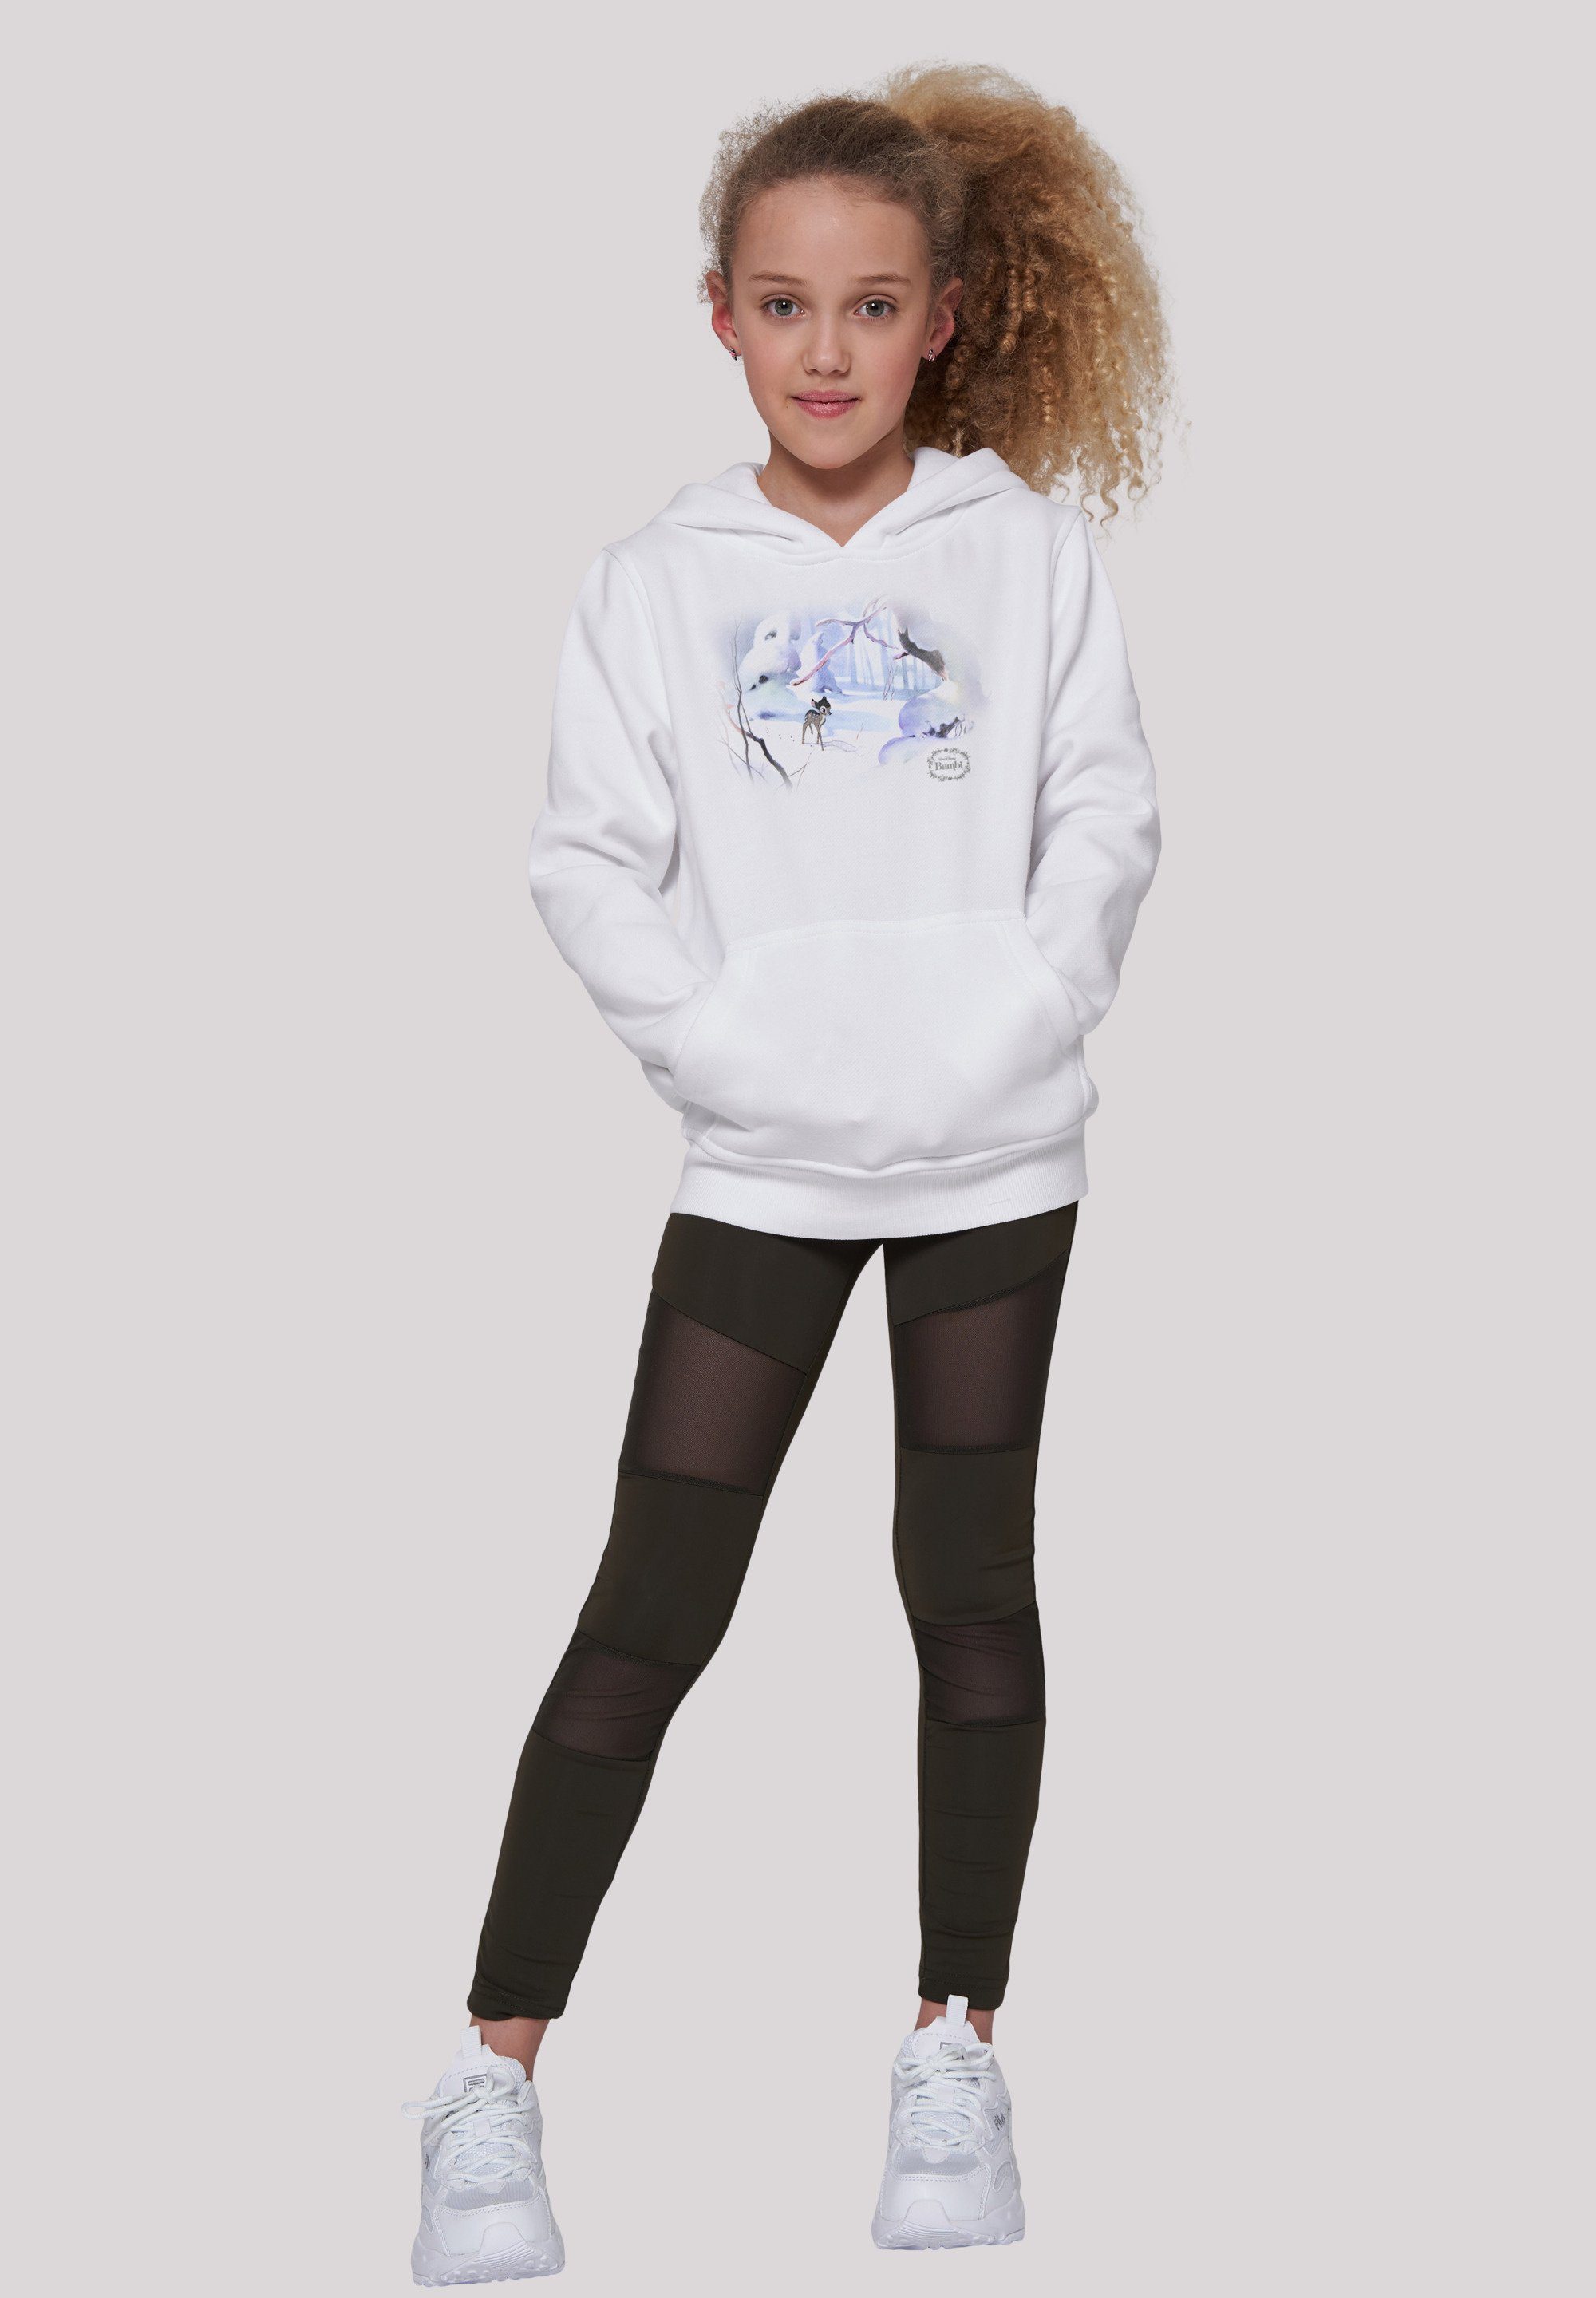 Bambi Sweatshirt Disney Unisex Merch,Jungen,Mädchen,Bedruckt Snow Kinder,Premium F4NT4STIC